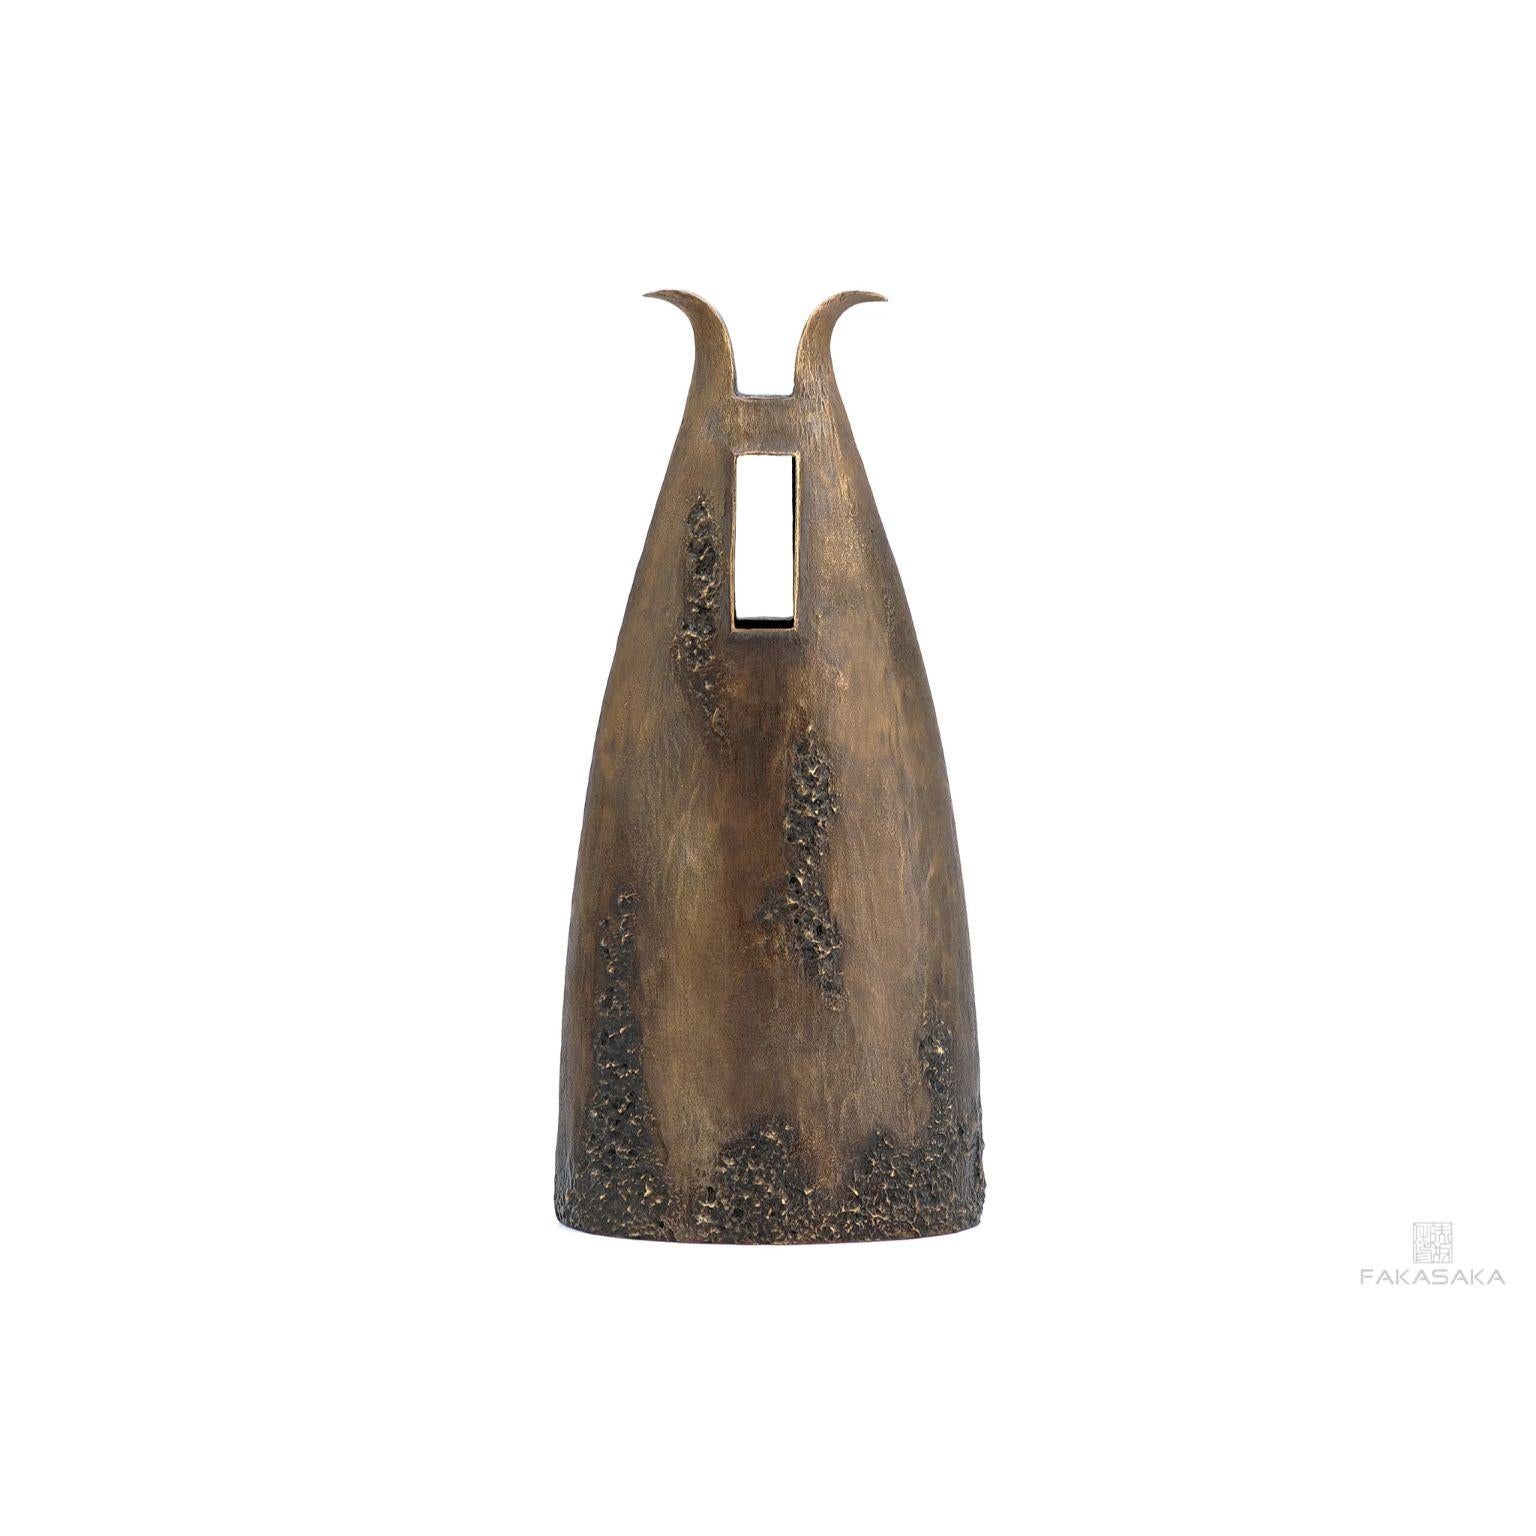 Vase Garrym de Fakasaka Design
Dimensions : L 19 cm P 12 cm H 41,5 cm.
Matériaux : Bronze foncé.

 FAKASAKA est une société de design spécialisée dans la production de meubles, d'éclairages, d'objets décoratifs, de bijoux et d'accessoires haut de